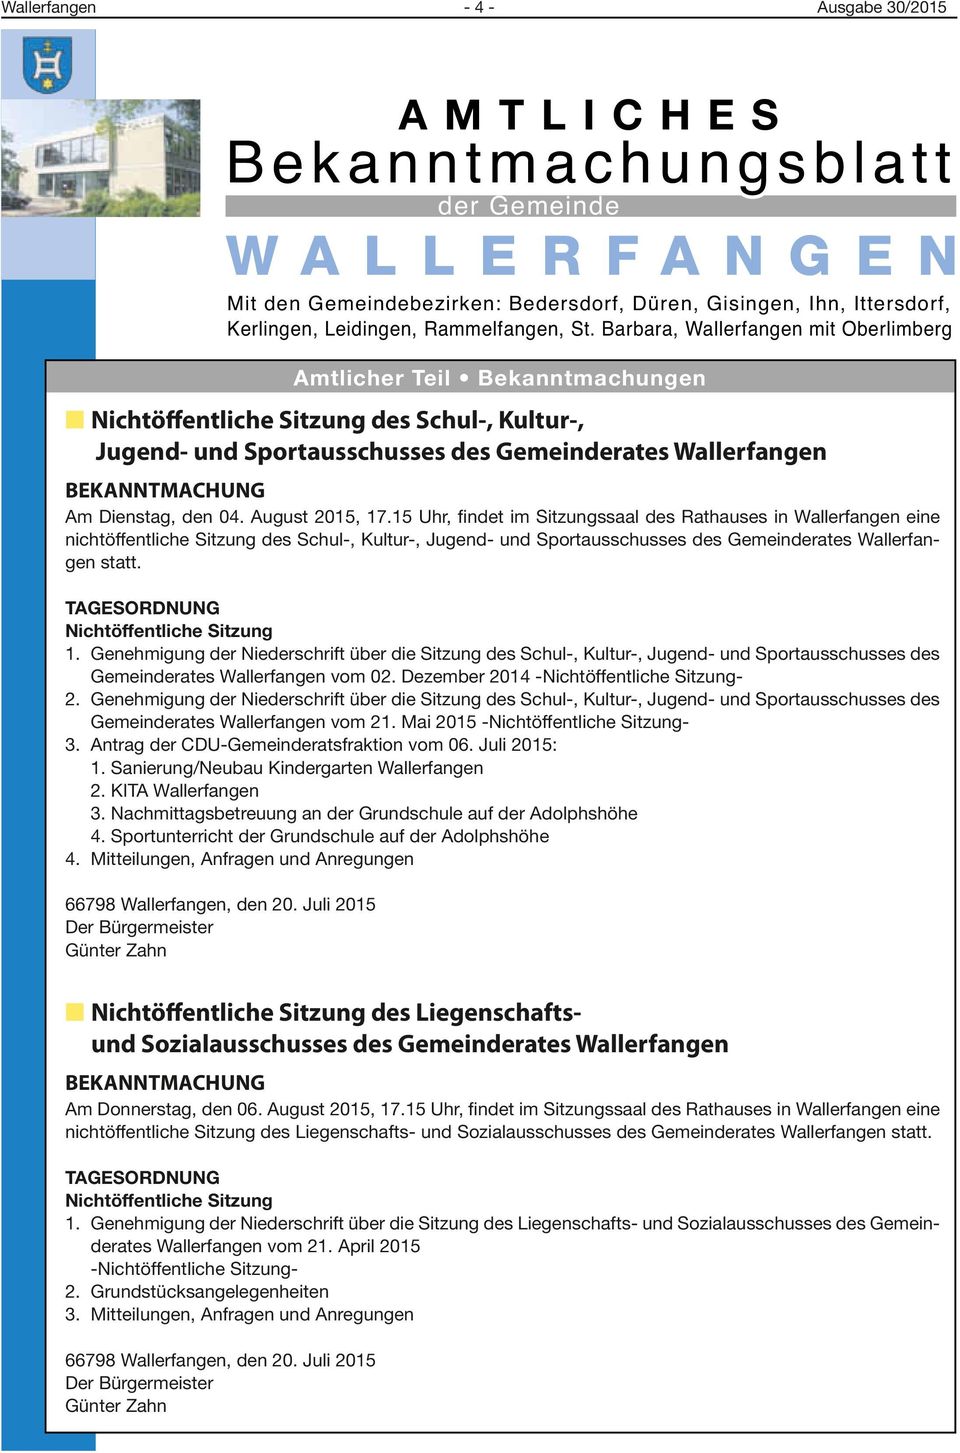 August 2015, 17.15 Uhr, findet im Sitzungssaal des Rathauses in Wallerfangen eine nichtöffentliche Sitzung des Schul-, Kultur-, Jugend- und Sportausschusses des Gemeinderates Wallerfangen statt.